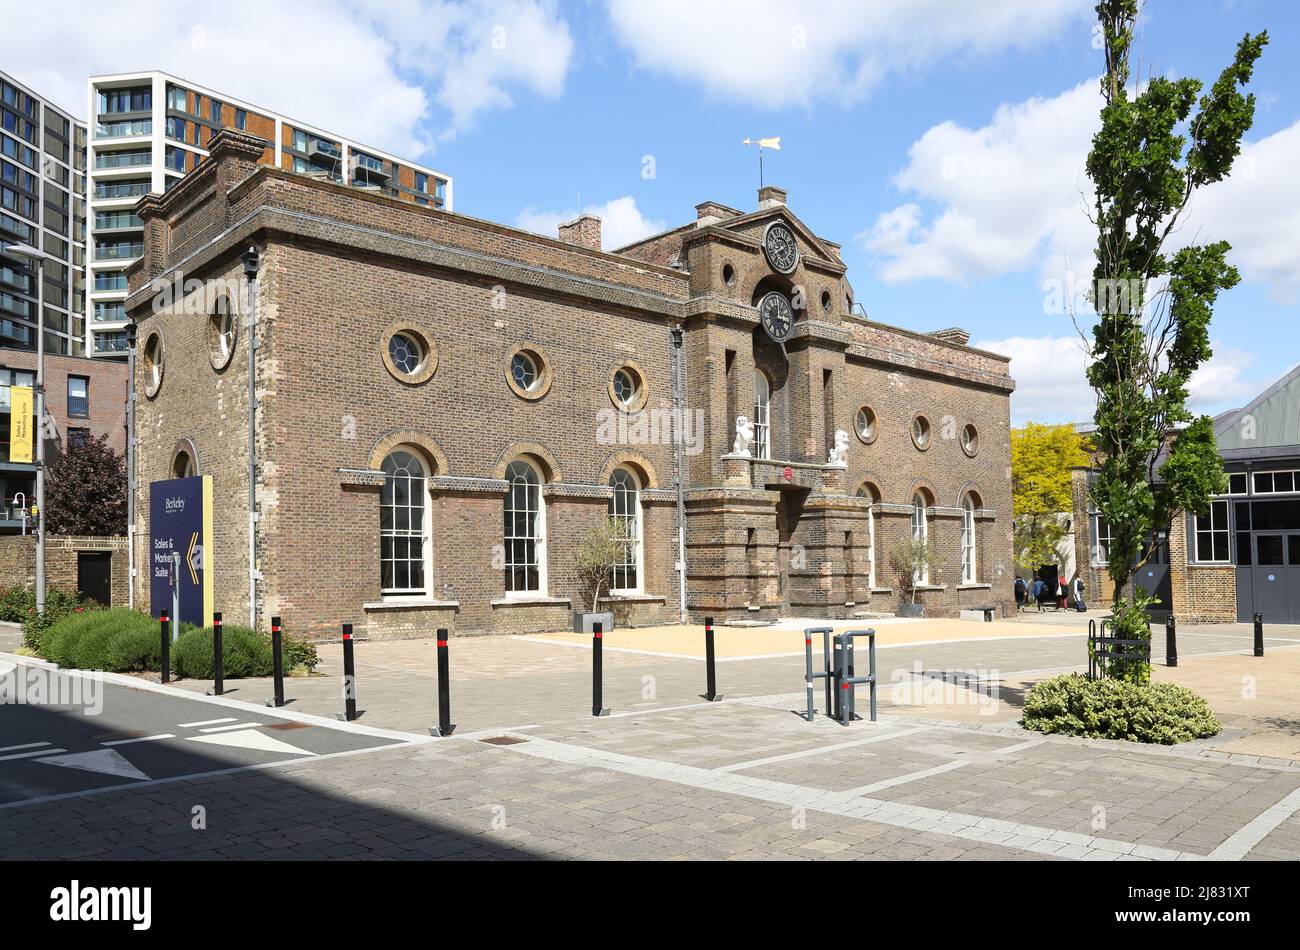 Artillerie Square, Woolwich, Londres, Royaume-Uni. Montre le bâtiment victorien de la salle de conseil - maintenant occupé par l'Académie des arts de la scène Banque D'Images